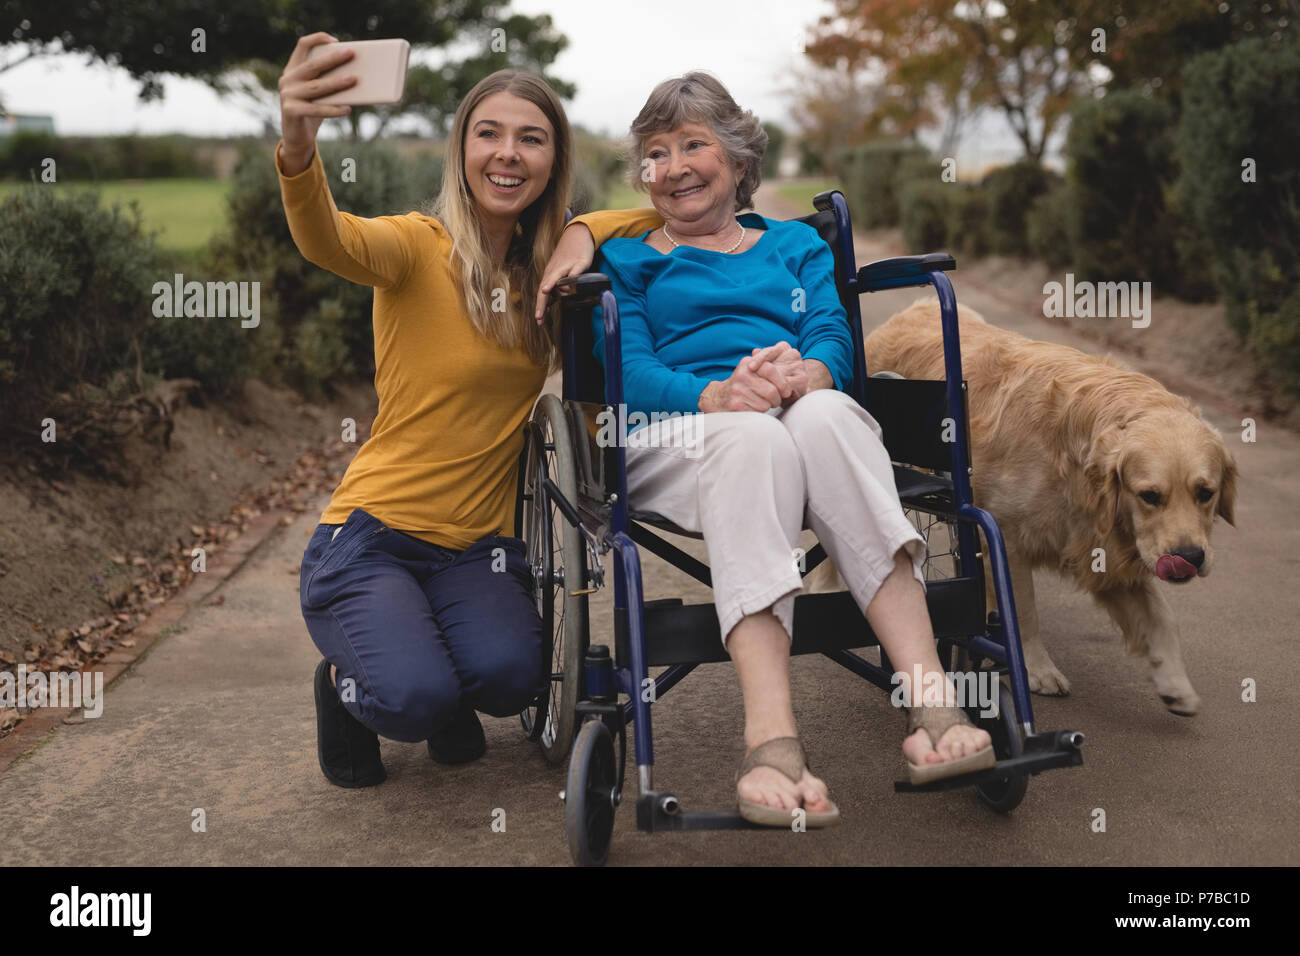 La nipote e nonna prendendo un selfie sul telefono cellulare Foto Stock